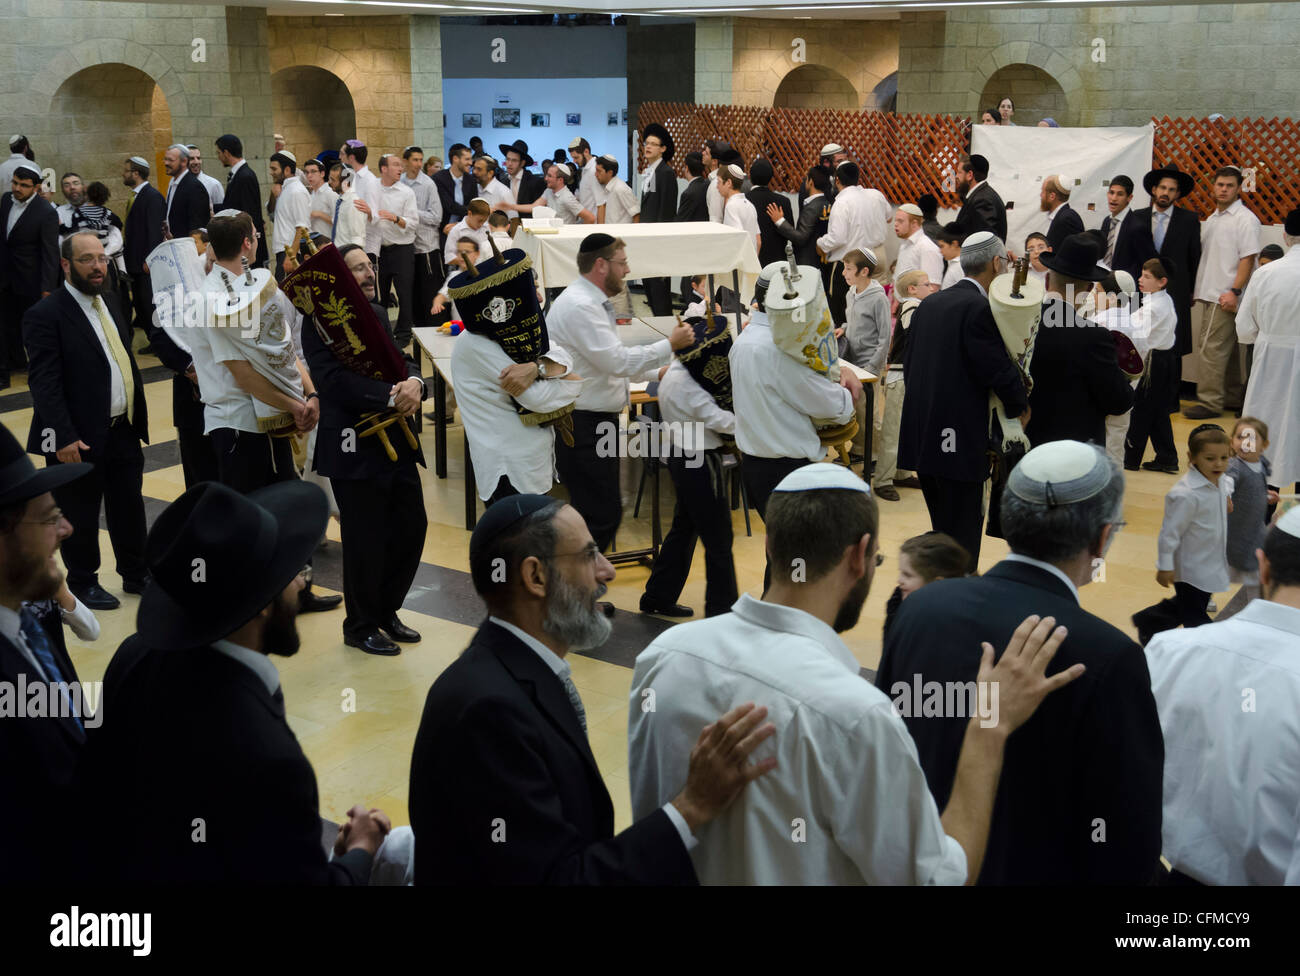 Juifs danser avec rouleaux de la Torah, Simhat Torah Fête juive, Jérusalem, Israël, Moyen Orient Banque D'Images